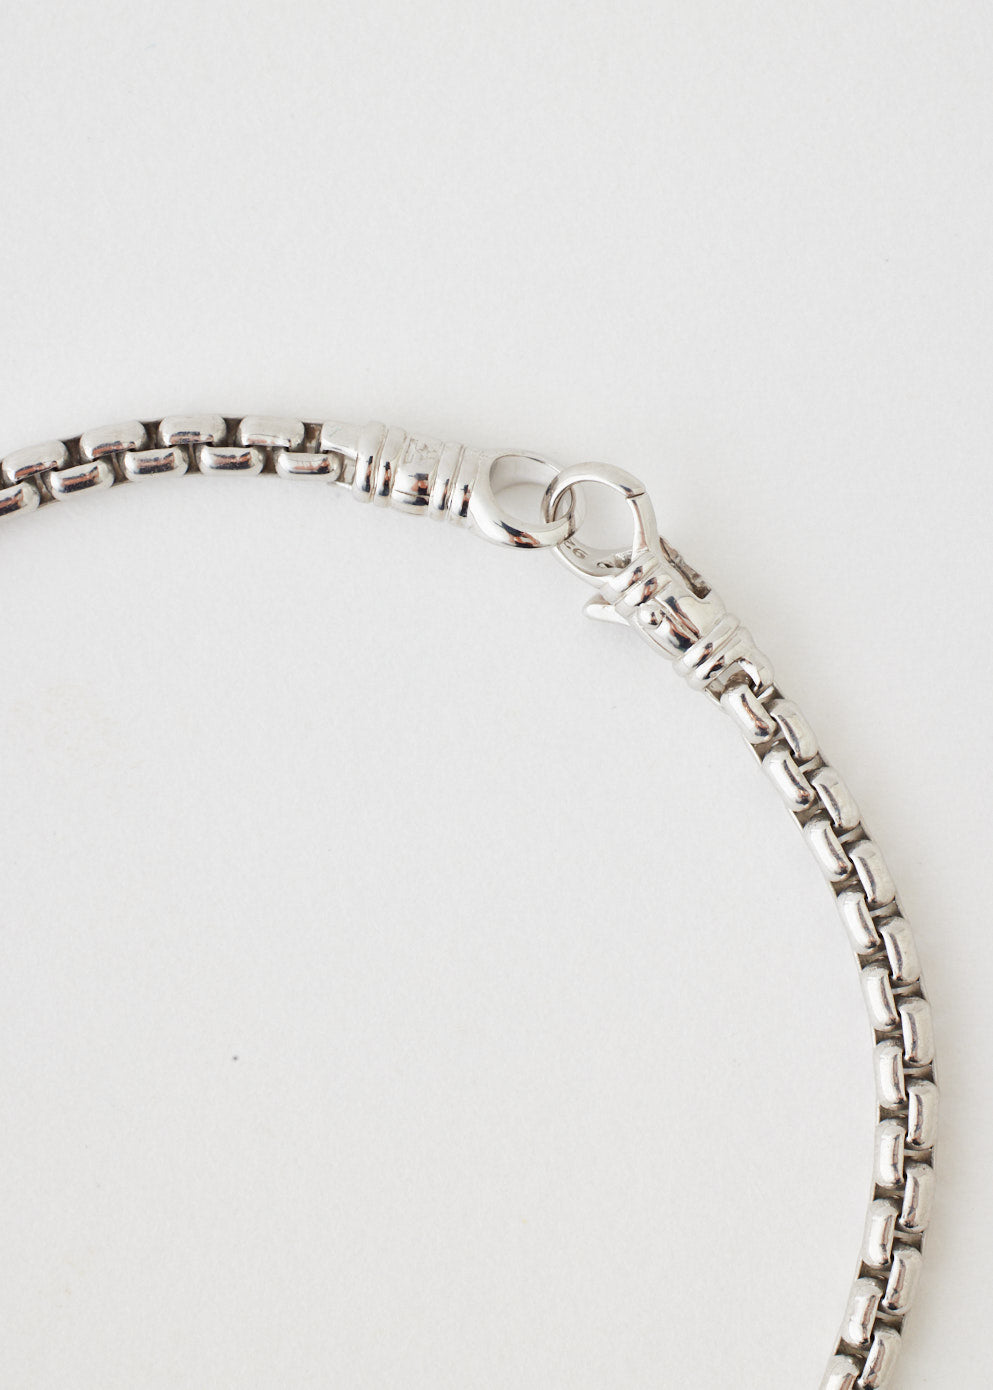 Venetian Bracelet Single M 8.3